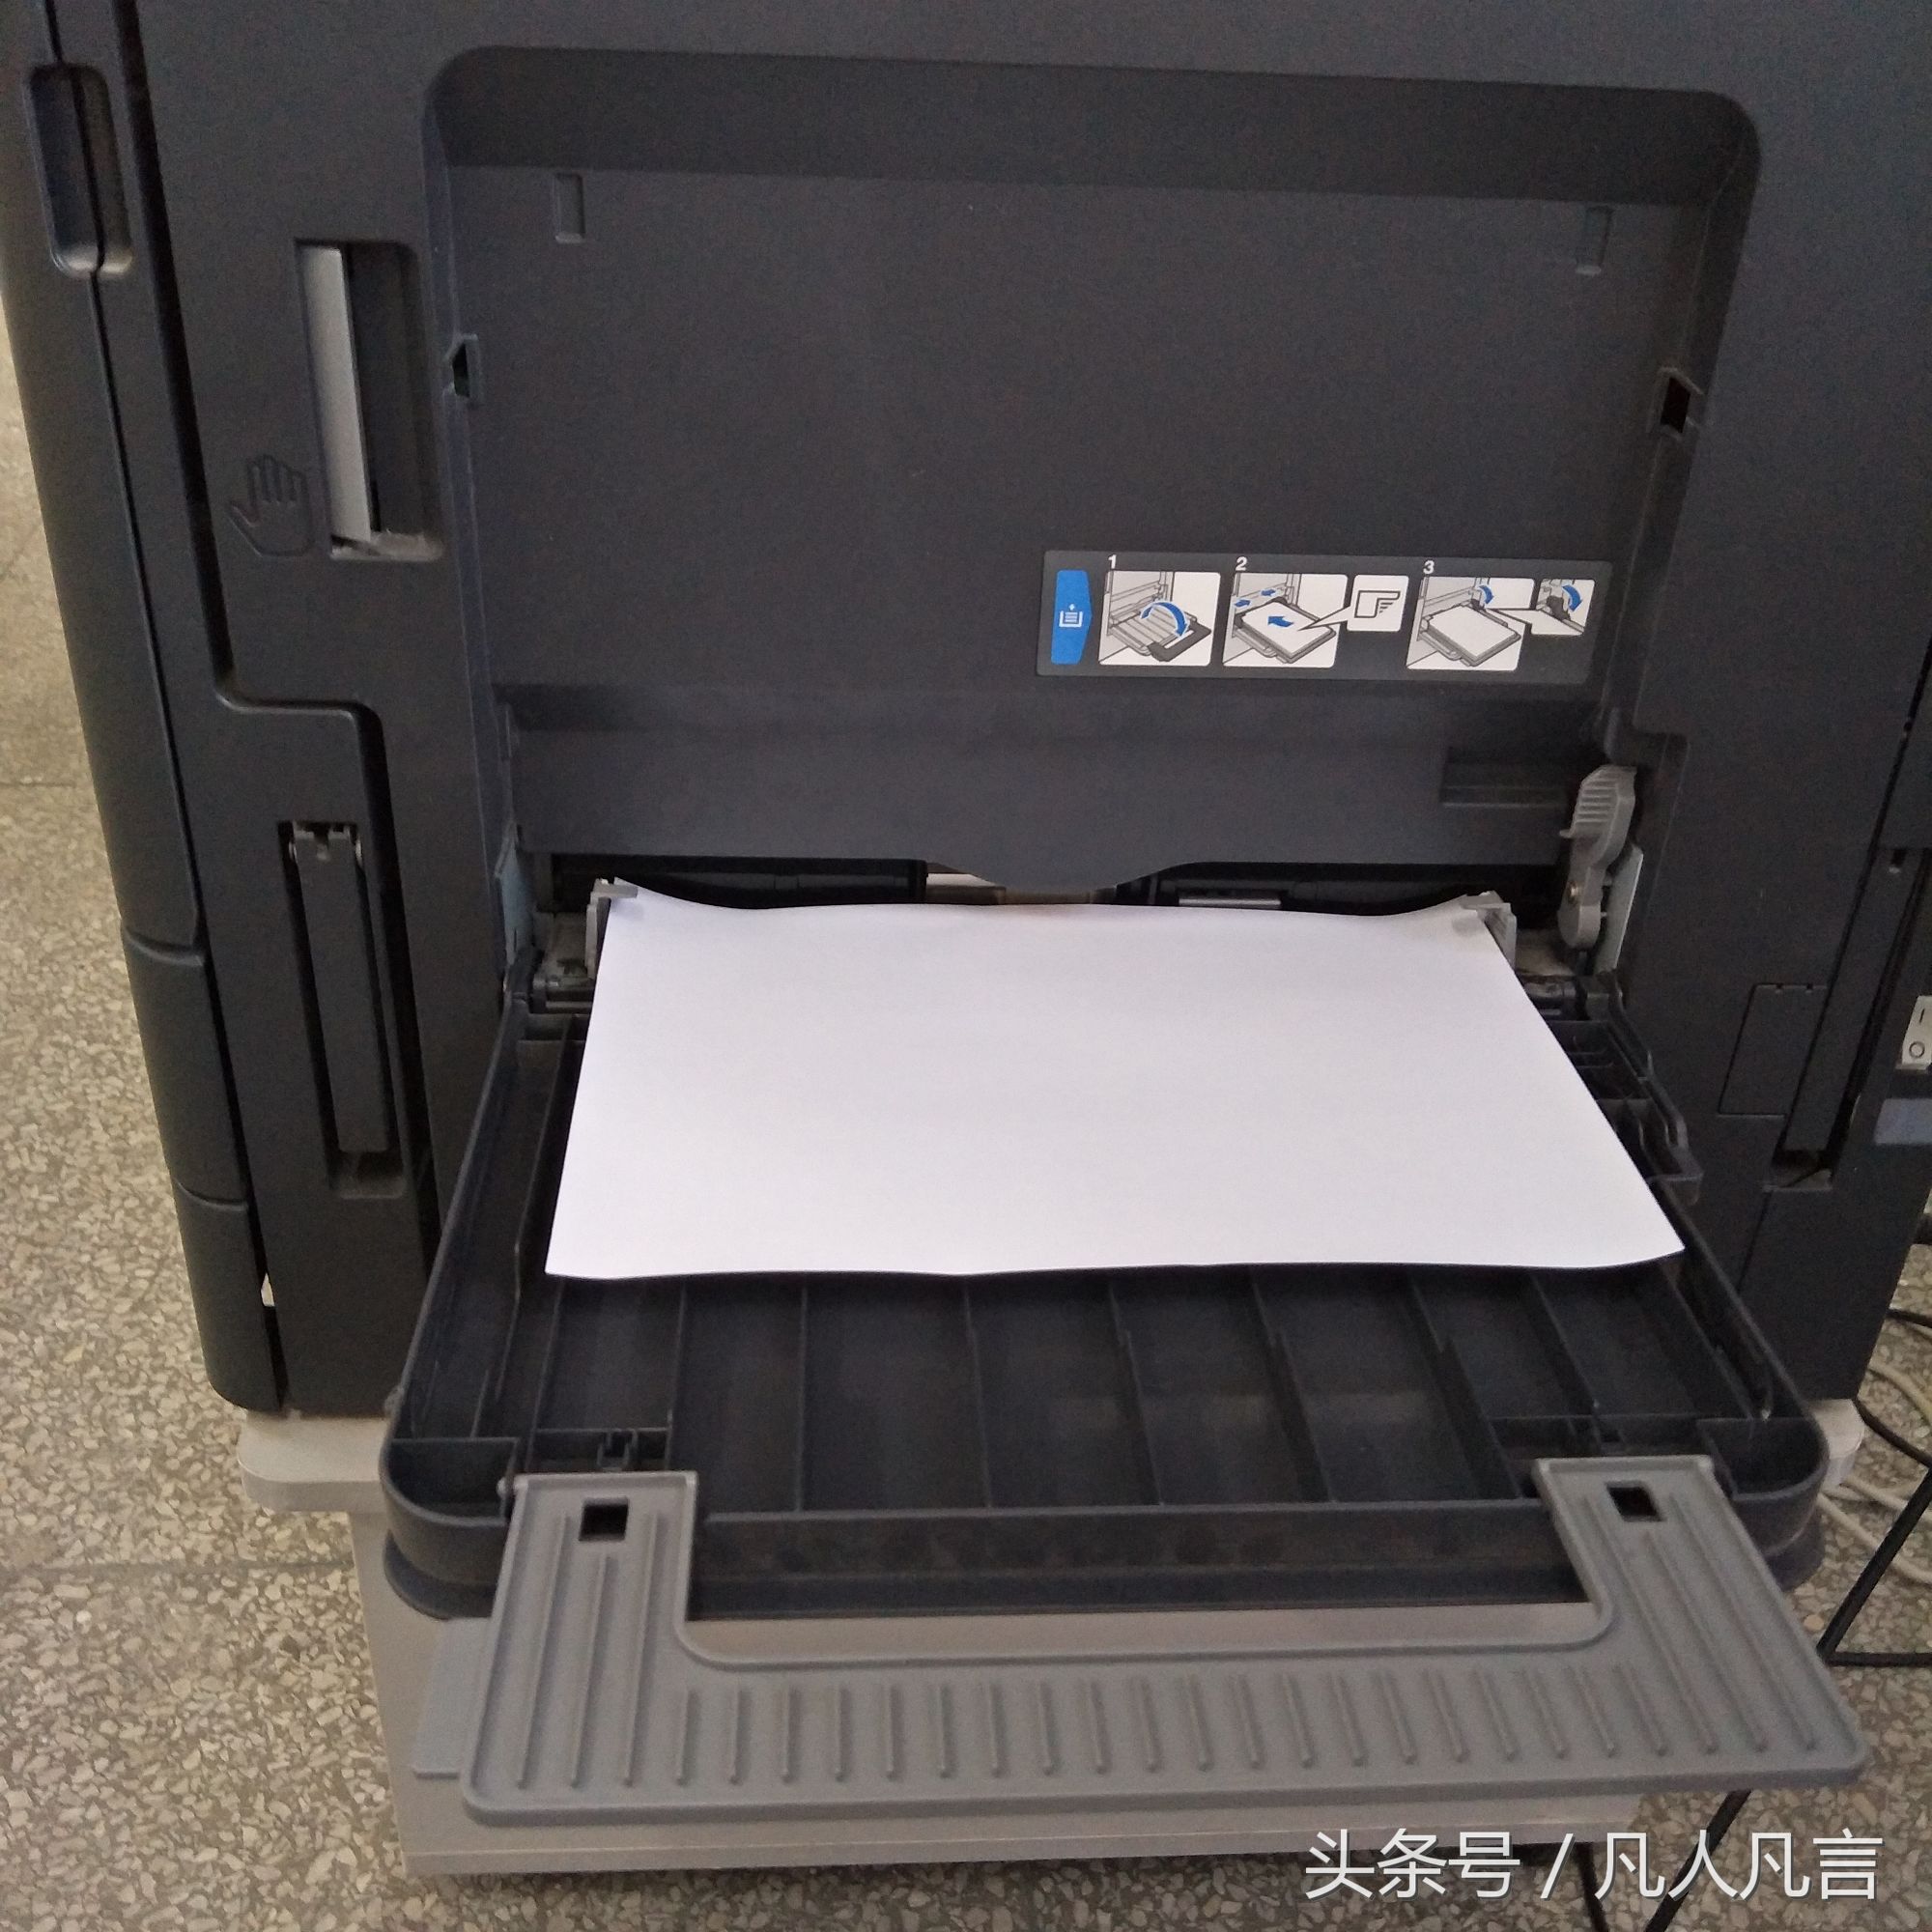 打印复印一体机中怎样放A3纸和A4纸？